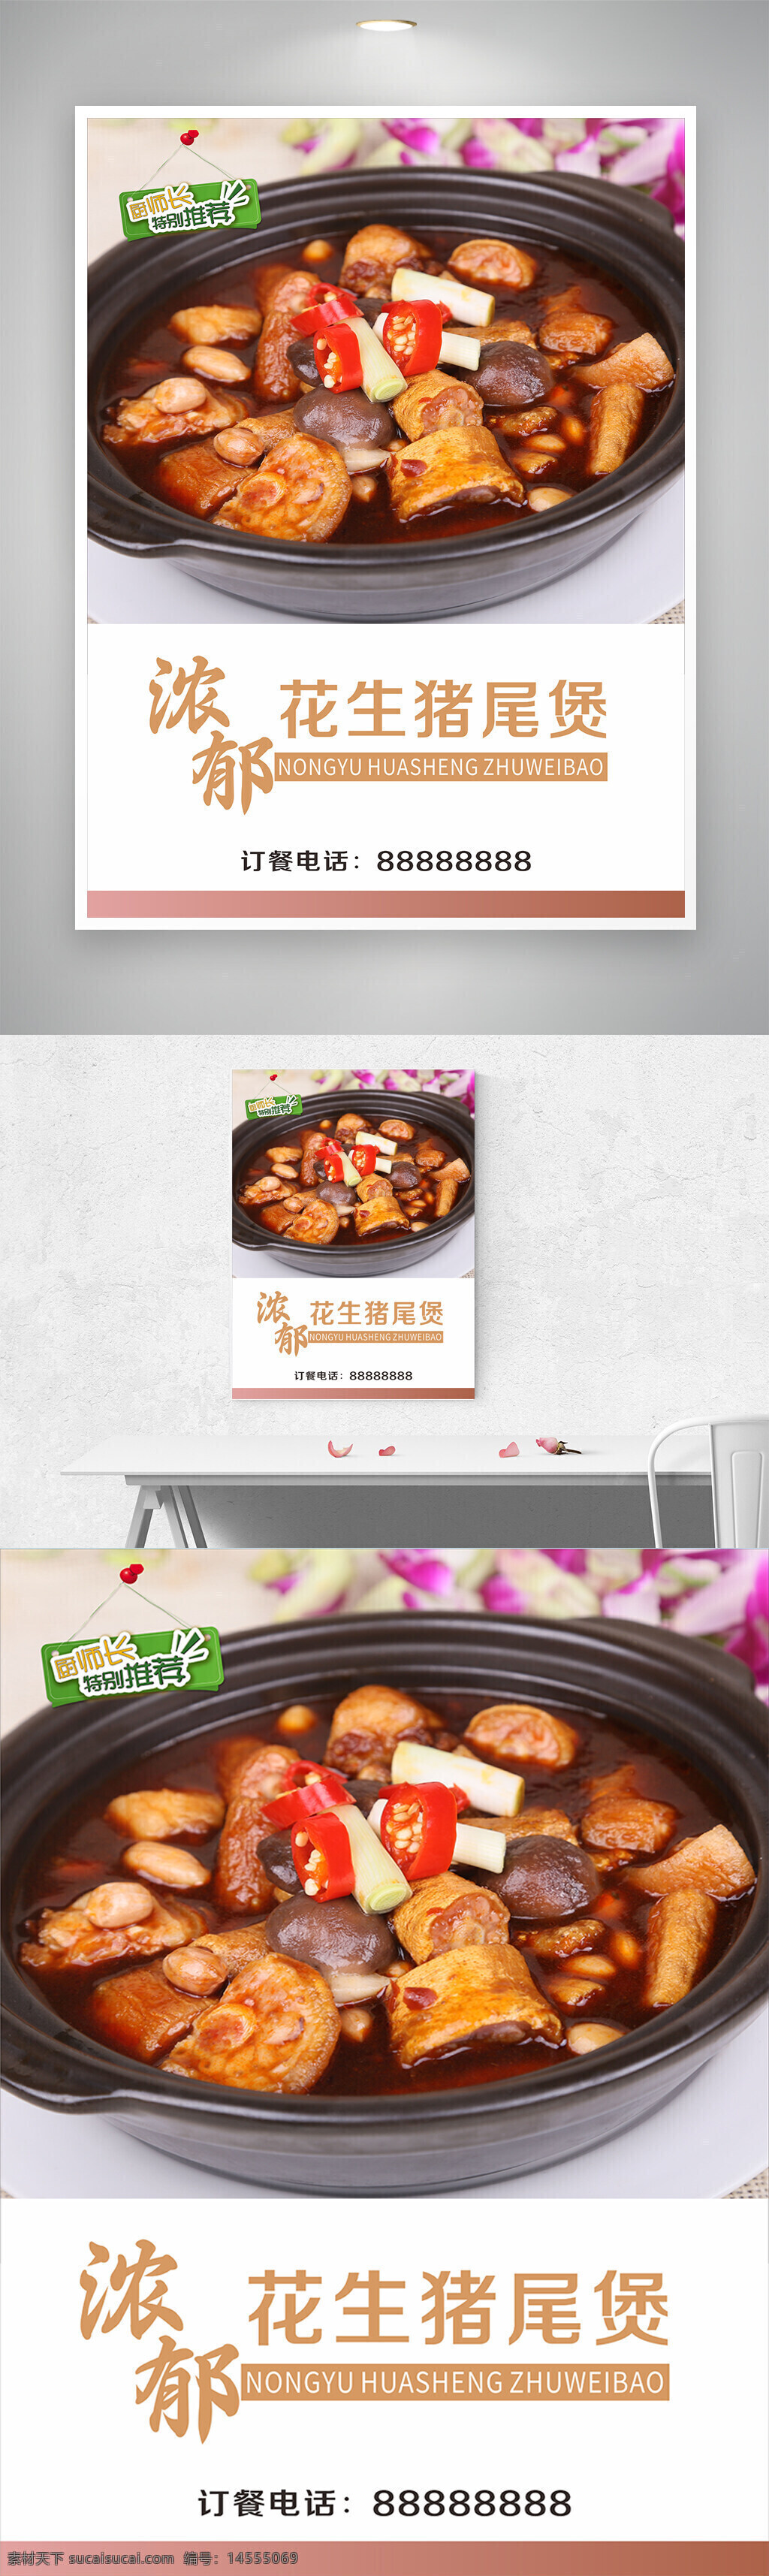 浓郁花生猪尾煲海报 中国特色美食新菜上市 新品上市 猪尾 花生 农家菜